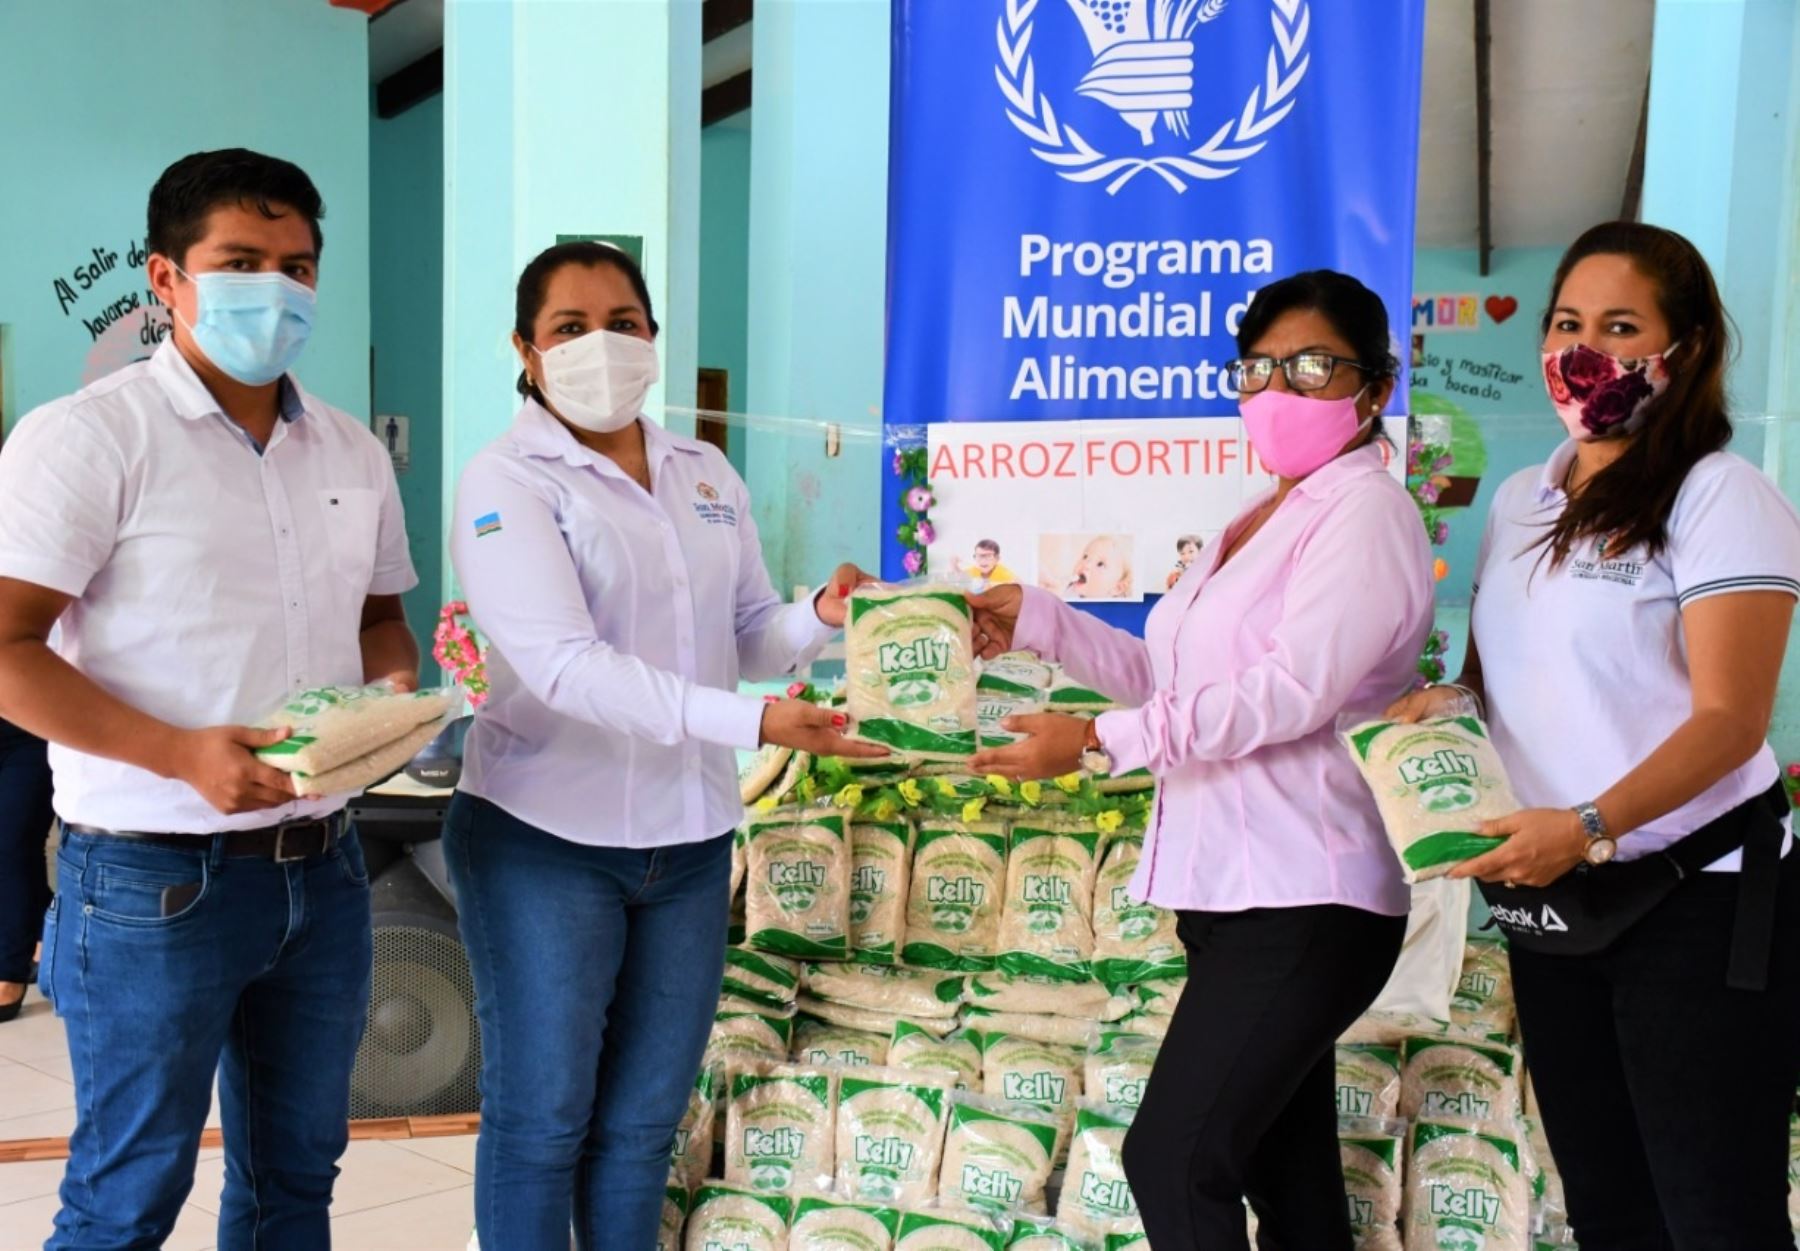 El Gobierno Regional de San Martín impulsa el consumo de arroz fortificado para combatir la anemia infantil y reducir los índices de esa enfermedad en la región ANDINA/Difusión